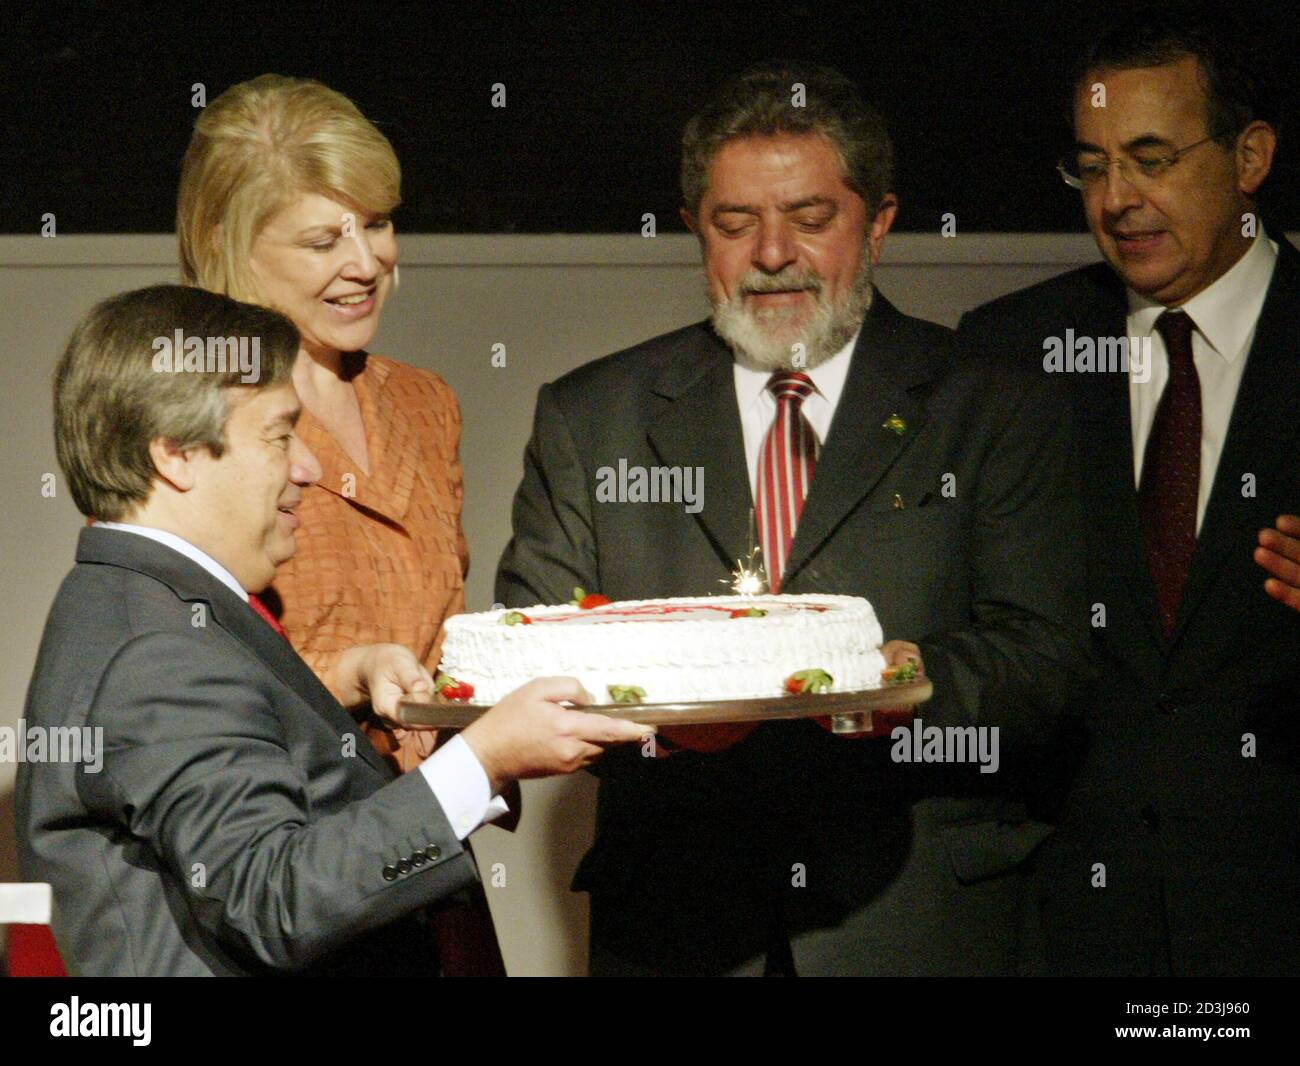 Le Président brésilien Luiz Inacio Lula da Silva (2R) reçoit d'Antonio Guterres (L), ancien Premier ministre portugais et président en exercice de l'Organisation socialiste internationale, un gâteau pour célébrer son 58e anniversaire, lors de la XXII réunion du groupe dans un centre de congrès de Sao Paulo, le 27 octobre 2003. On y regarde le maire de Sao Paulo, Marta Suplicy (2L) et Joao Paulo Cunha, président de la Chambre basse du Congrès brésilien. REUTERS/Paulo Whitaker RR/HB Banque D'Images